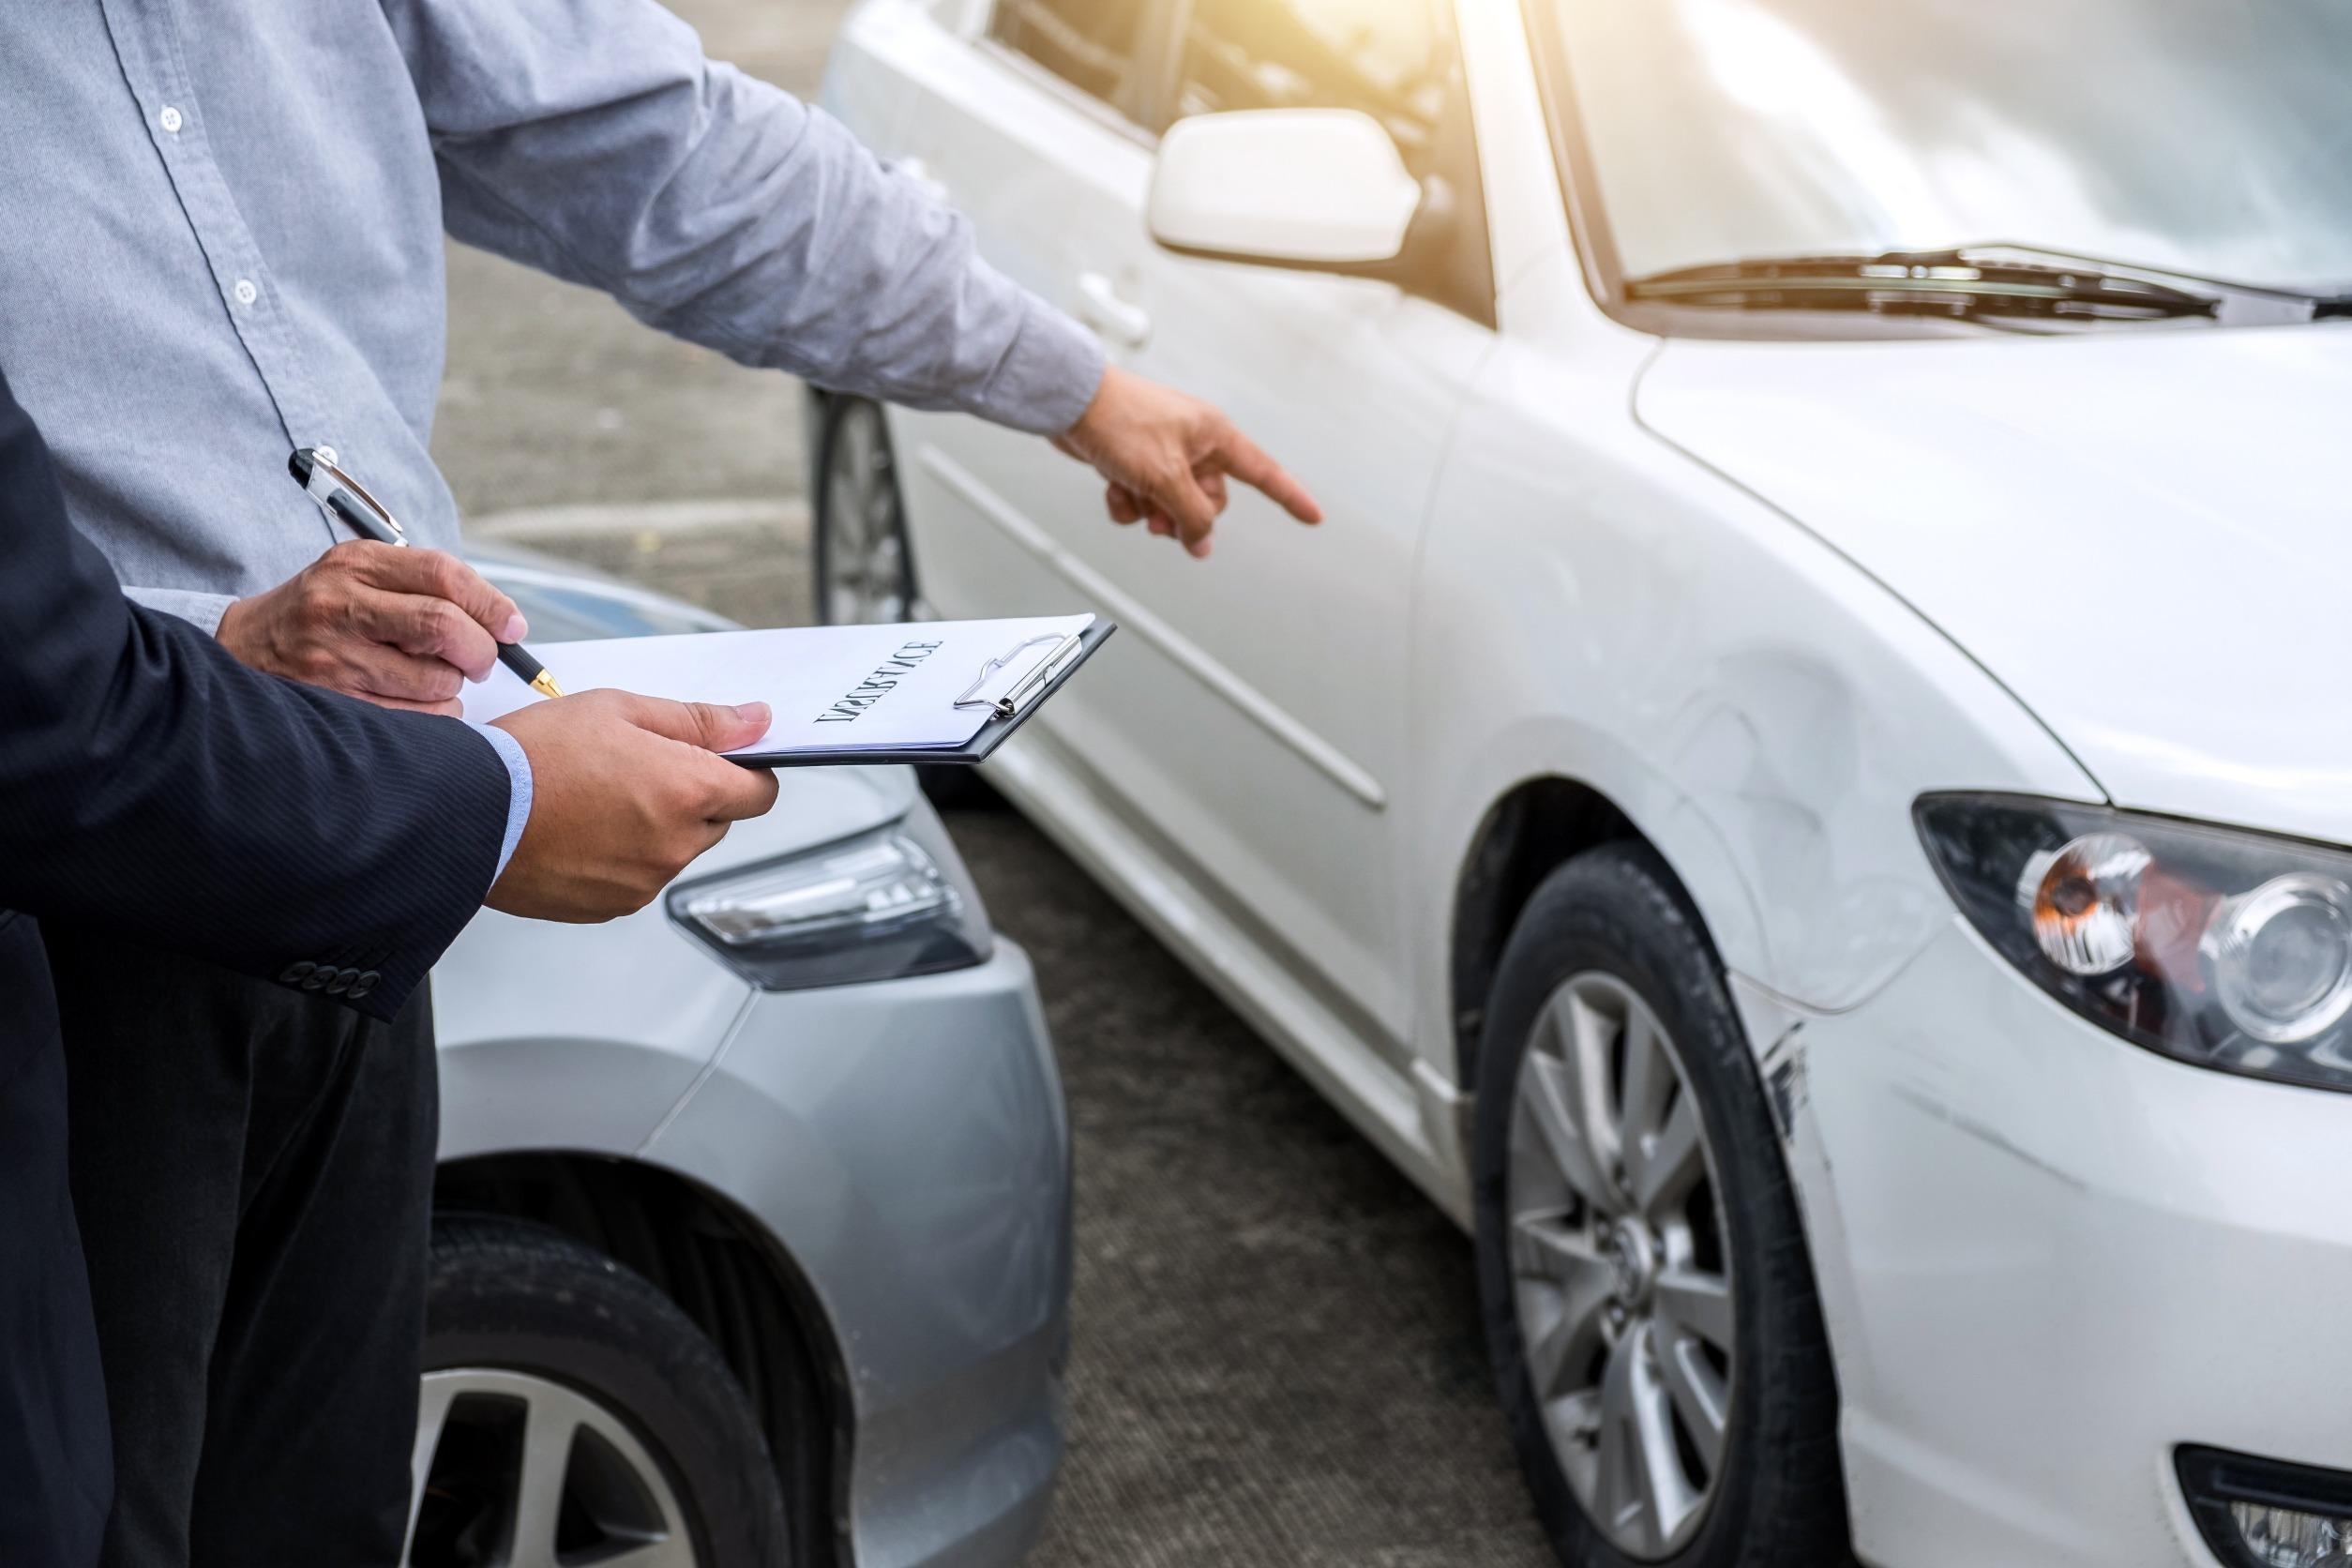 Garanzie assicurazione auto aggiuntive: quali sono le più utili?